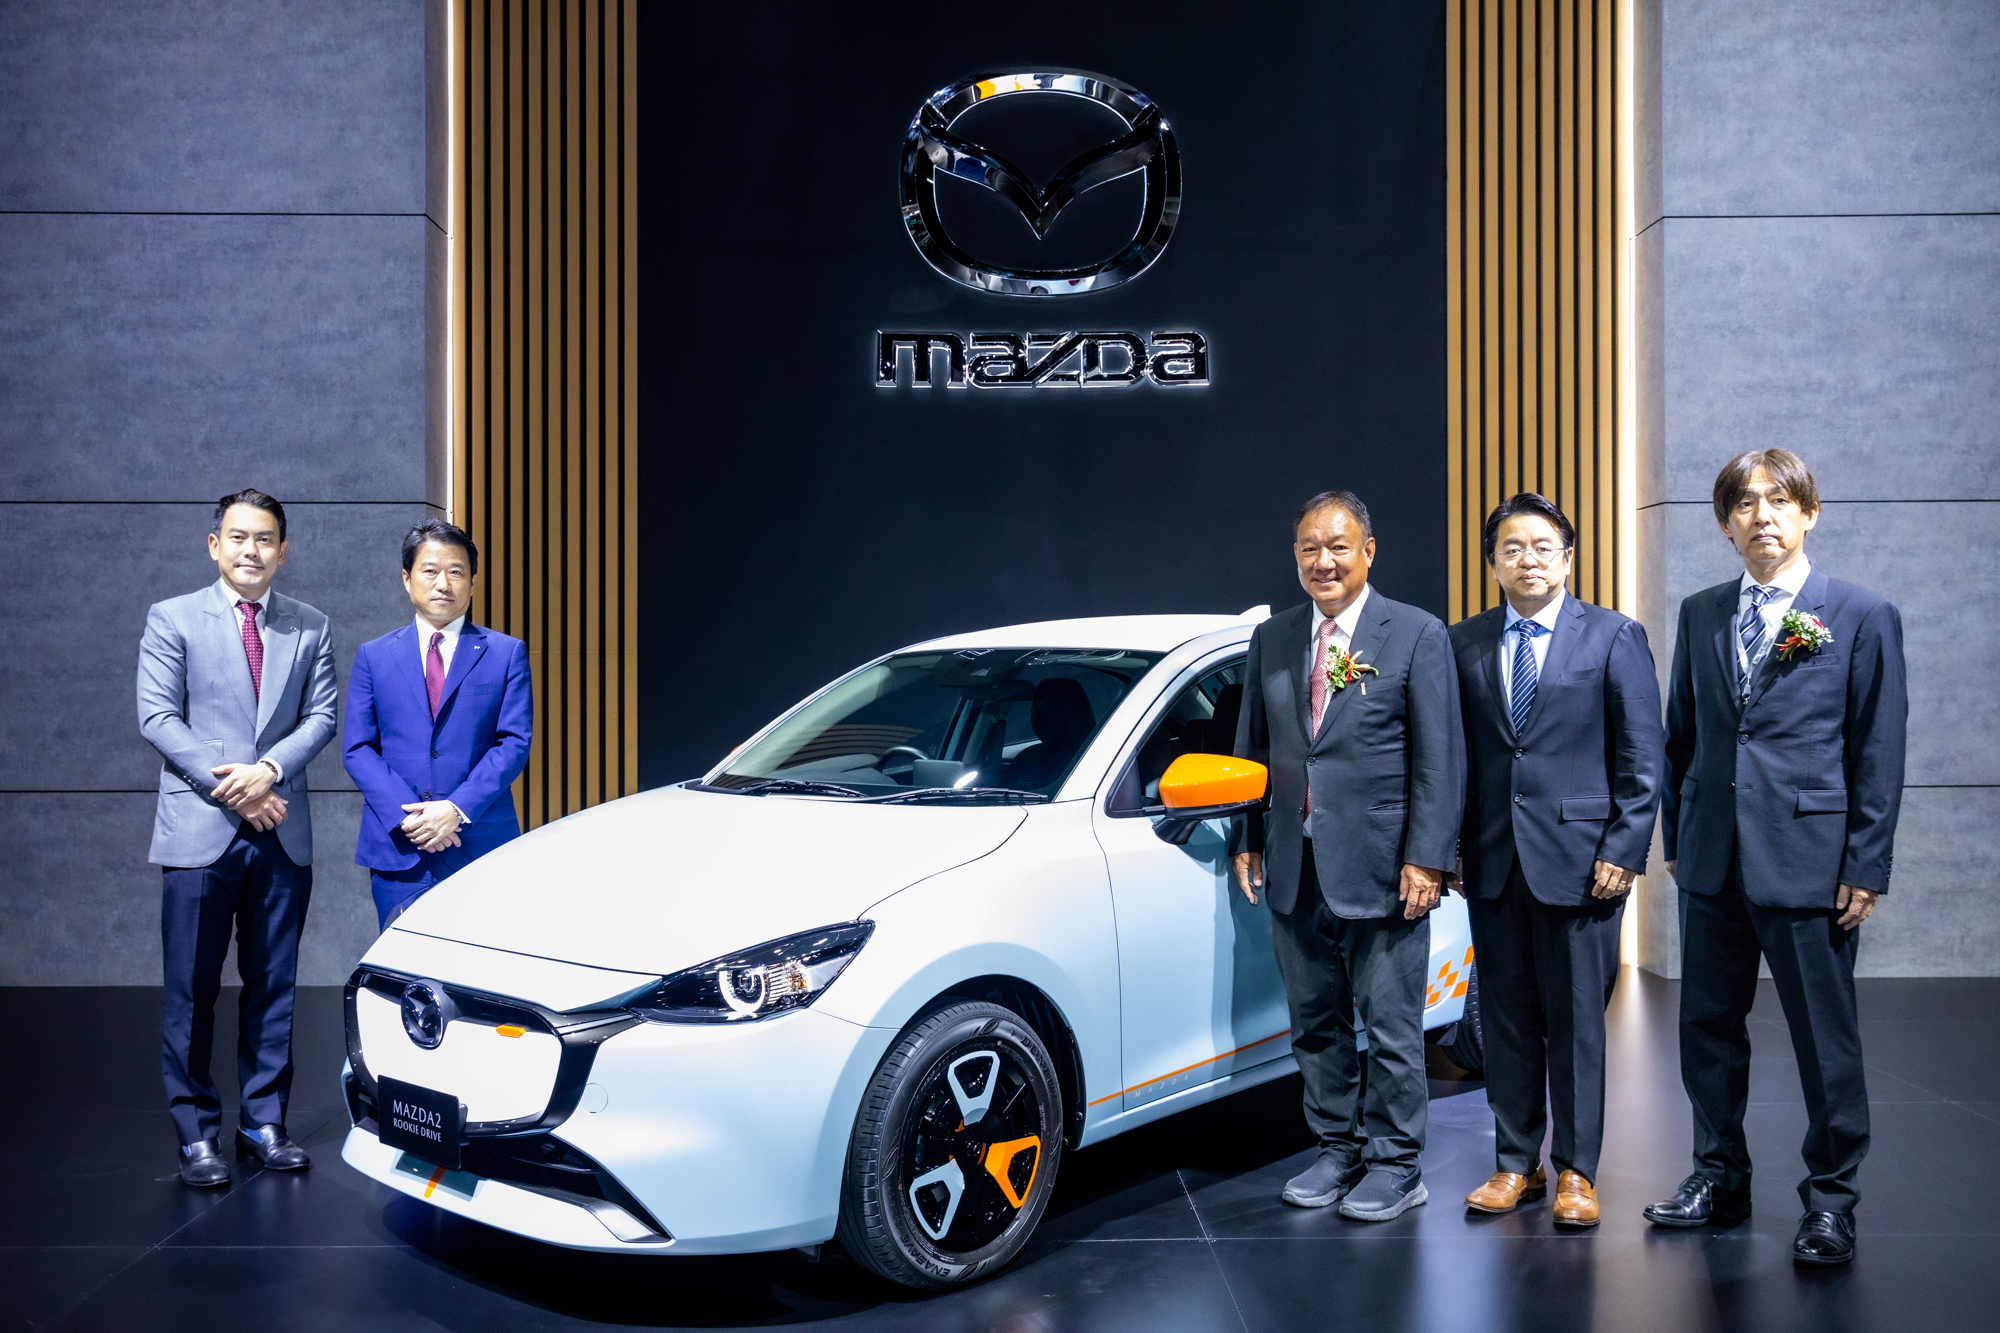 มาสด้าส่ง New Mazda2 นำทัพลุยงาน Bangkok Auto Salon พร้อมรุ่นพิเศษ Rookie Drive และ Clap Pop เอาใจคนชอบแต่งรถ